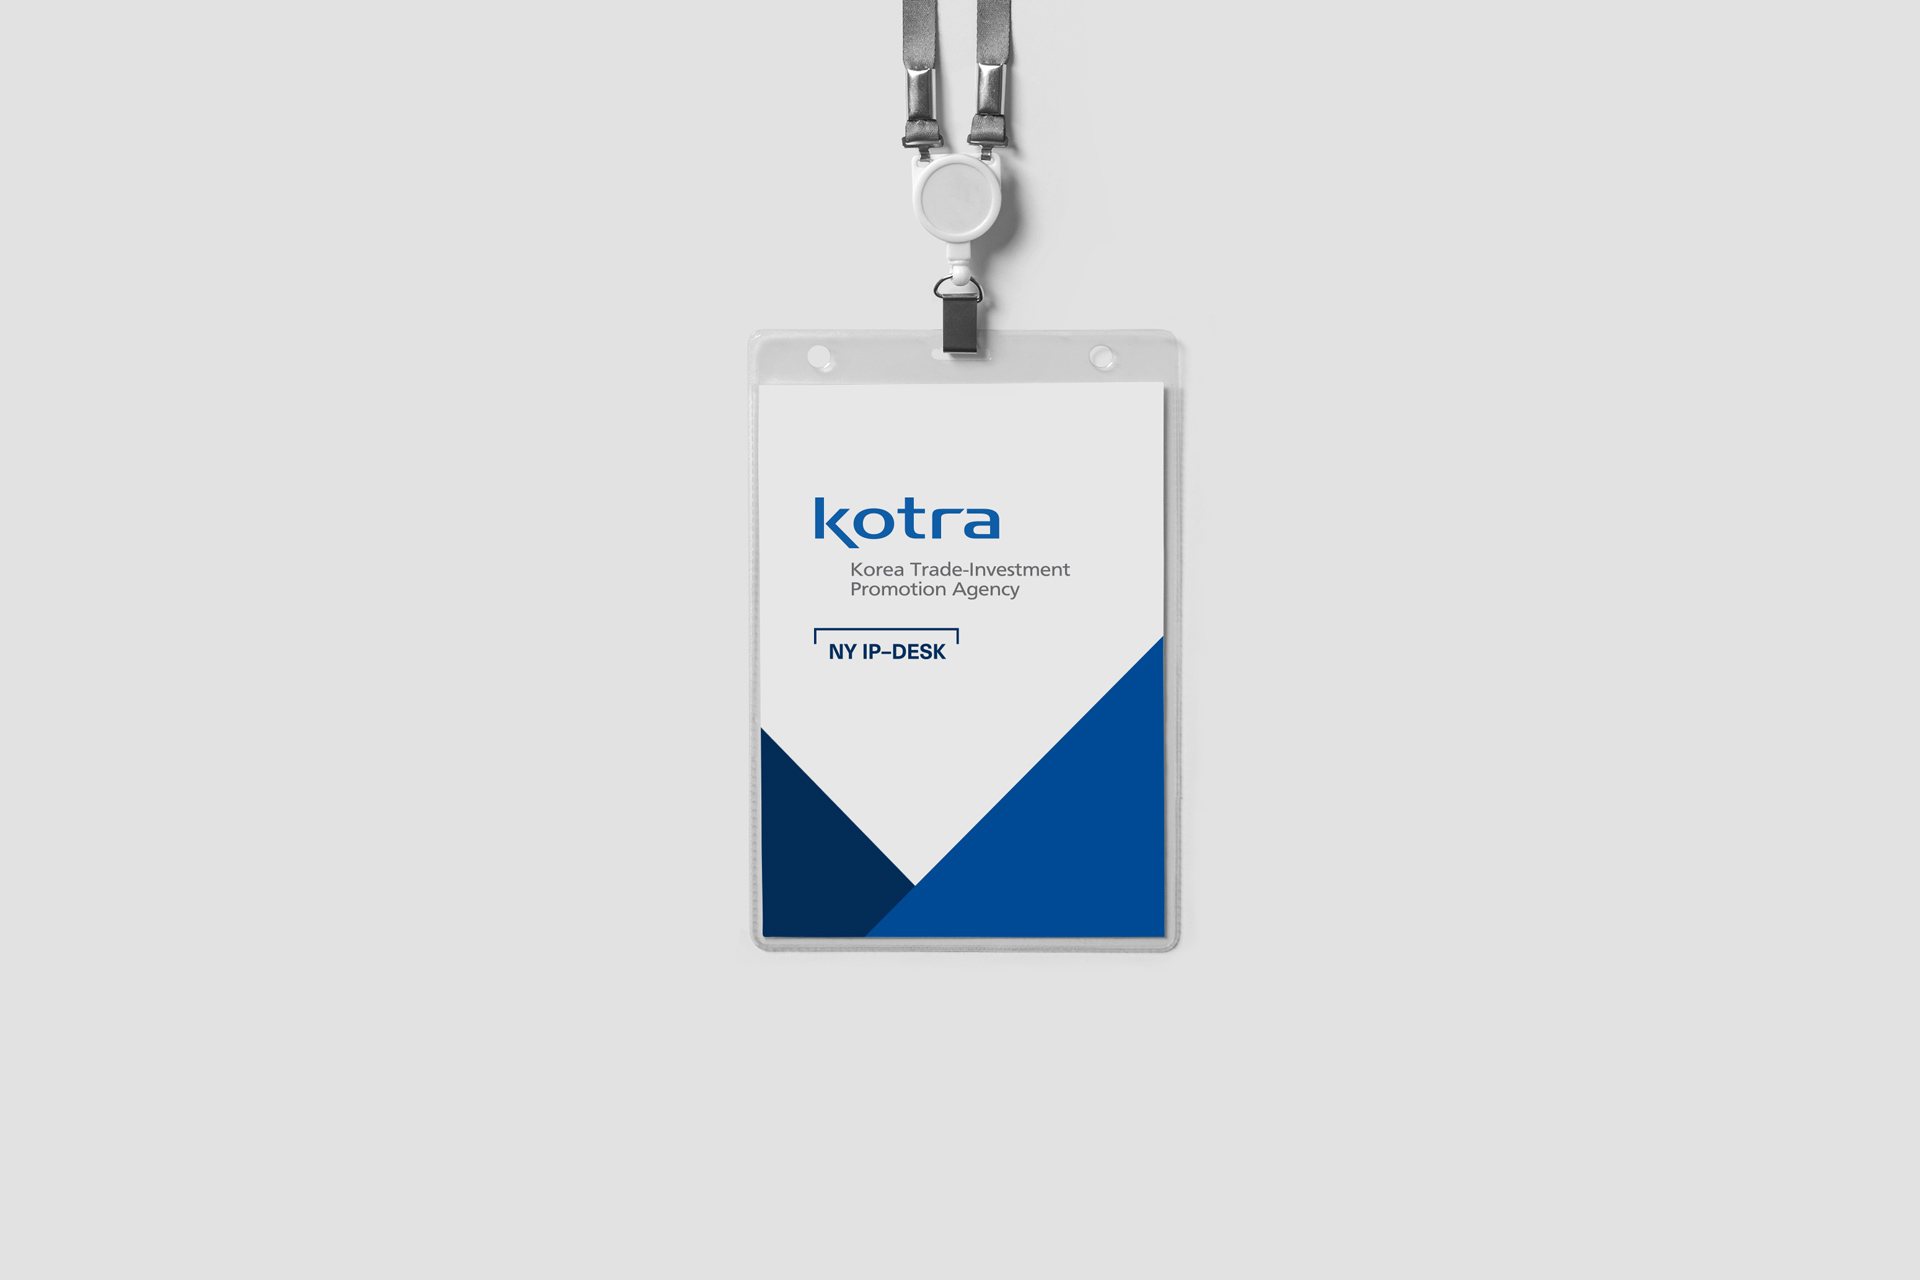 KOTRA New York IP-Desk